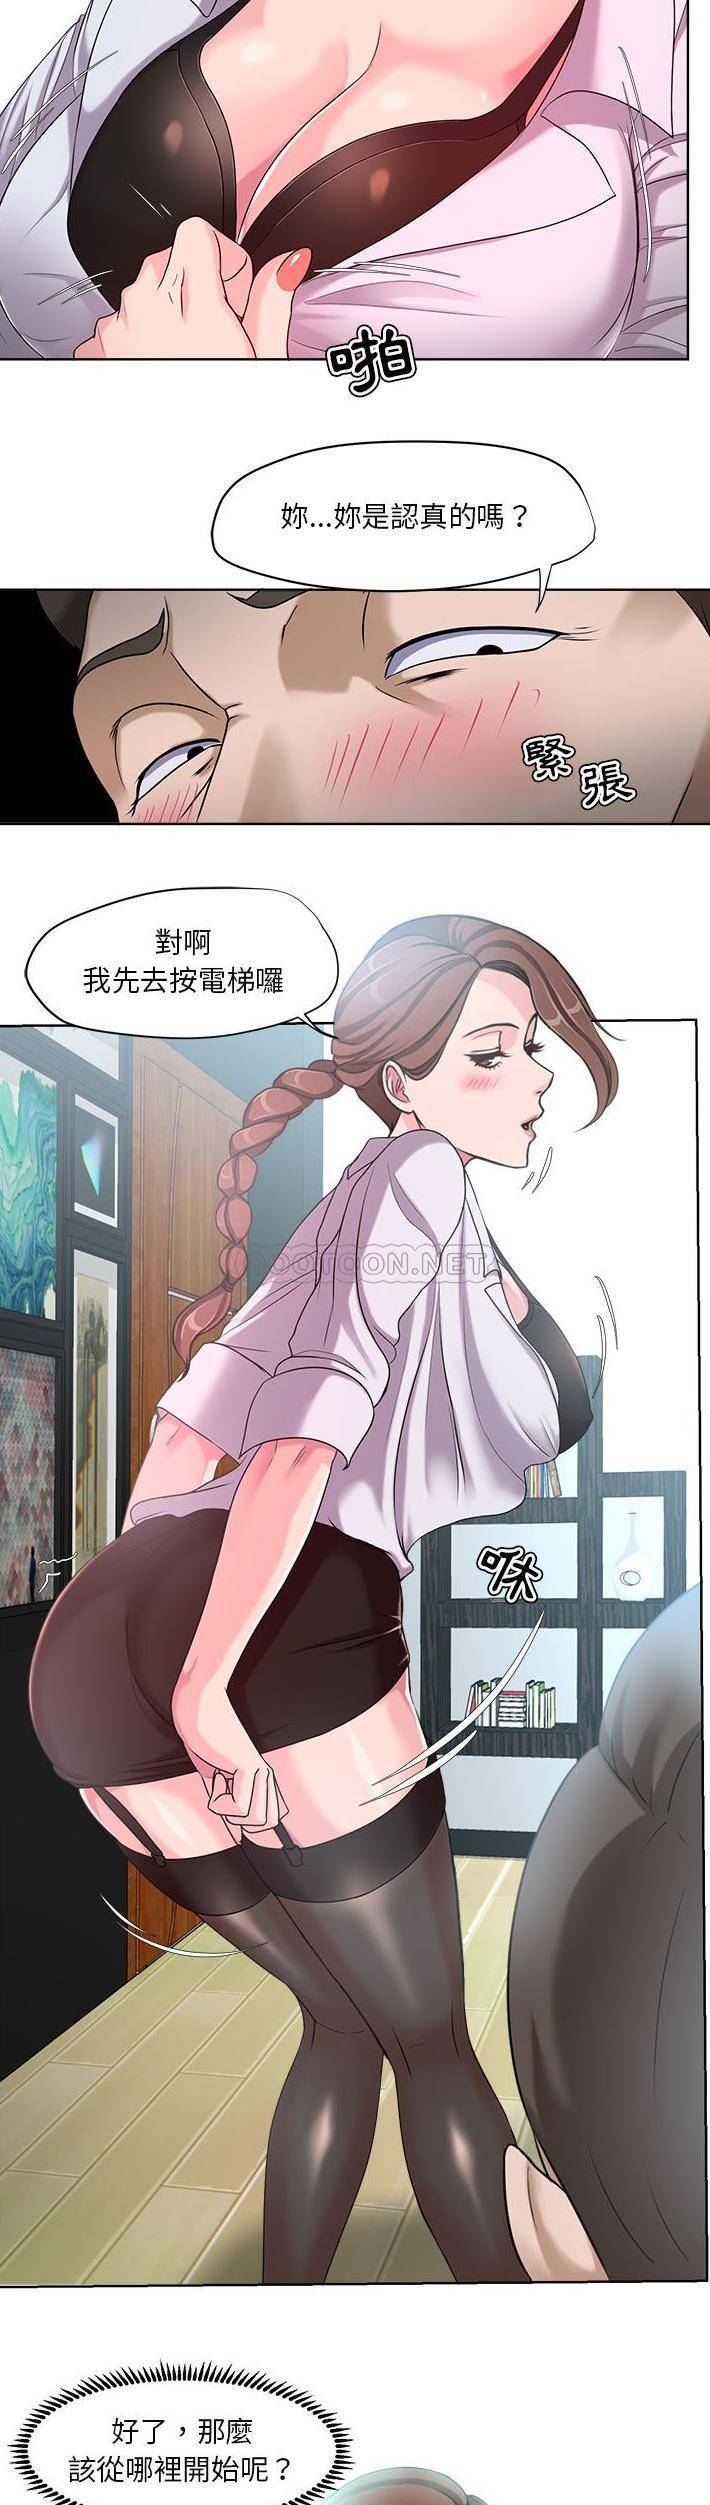 韩国污漫画 女人專門為難女人(女人的戰爭) 第7话 20